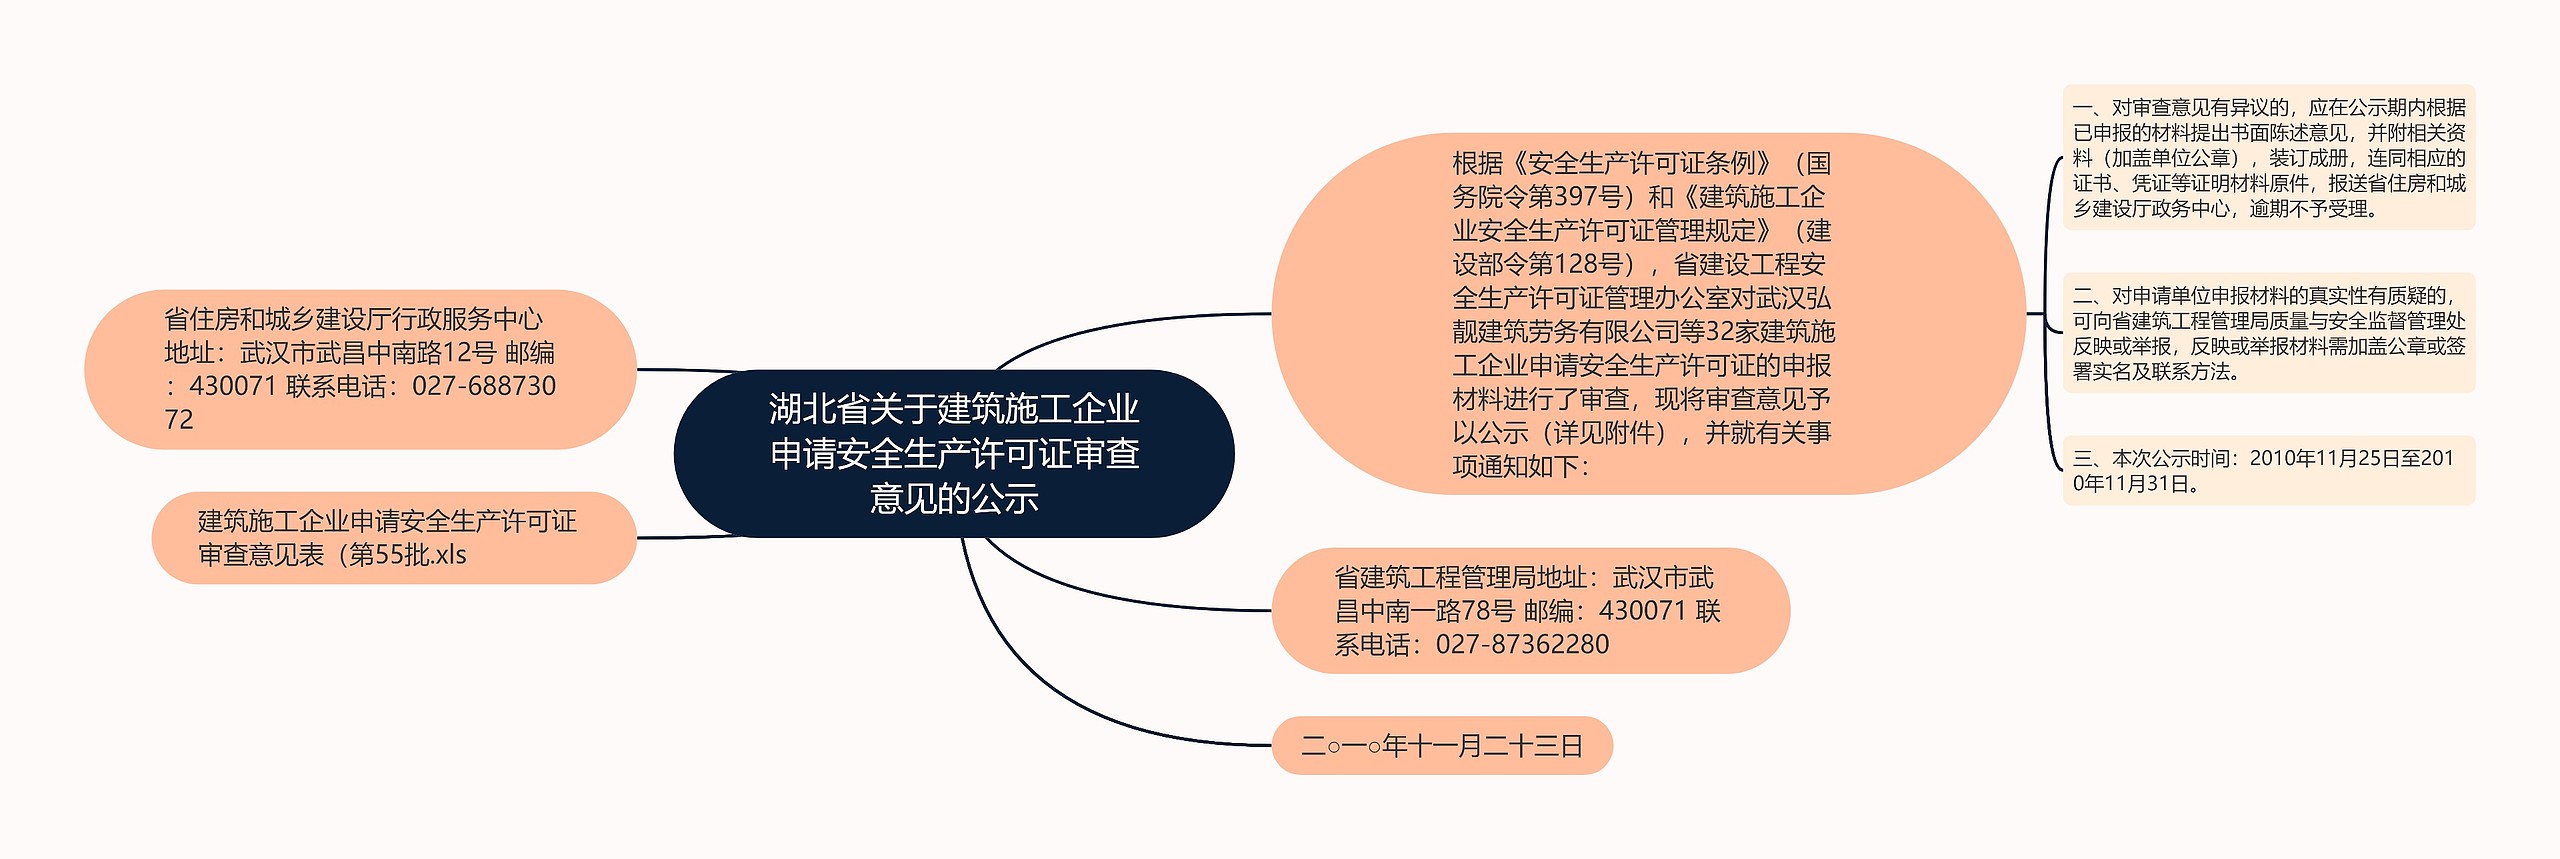 湖北省关于建筑施工企业申请安全生产许可证审查意见的公示思维导图